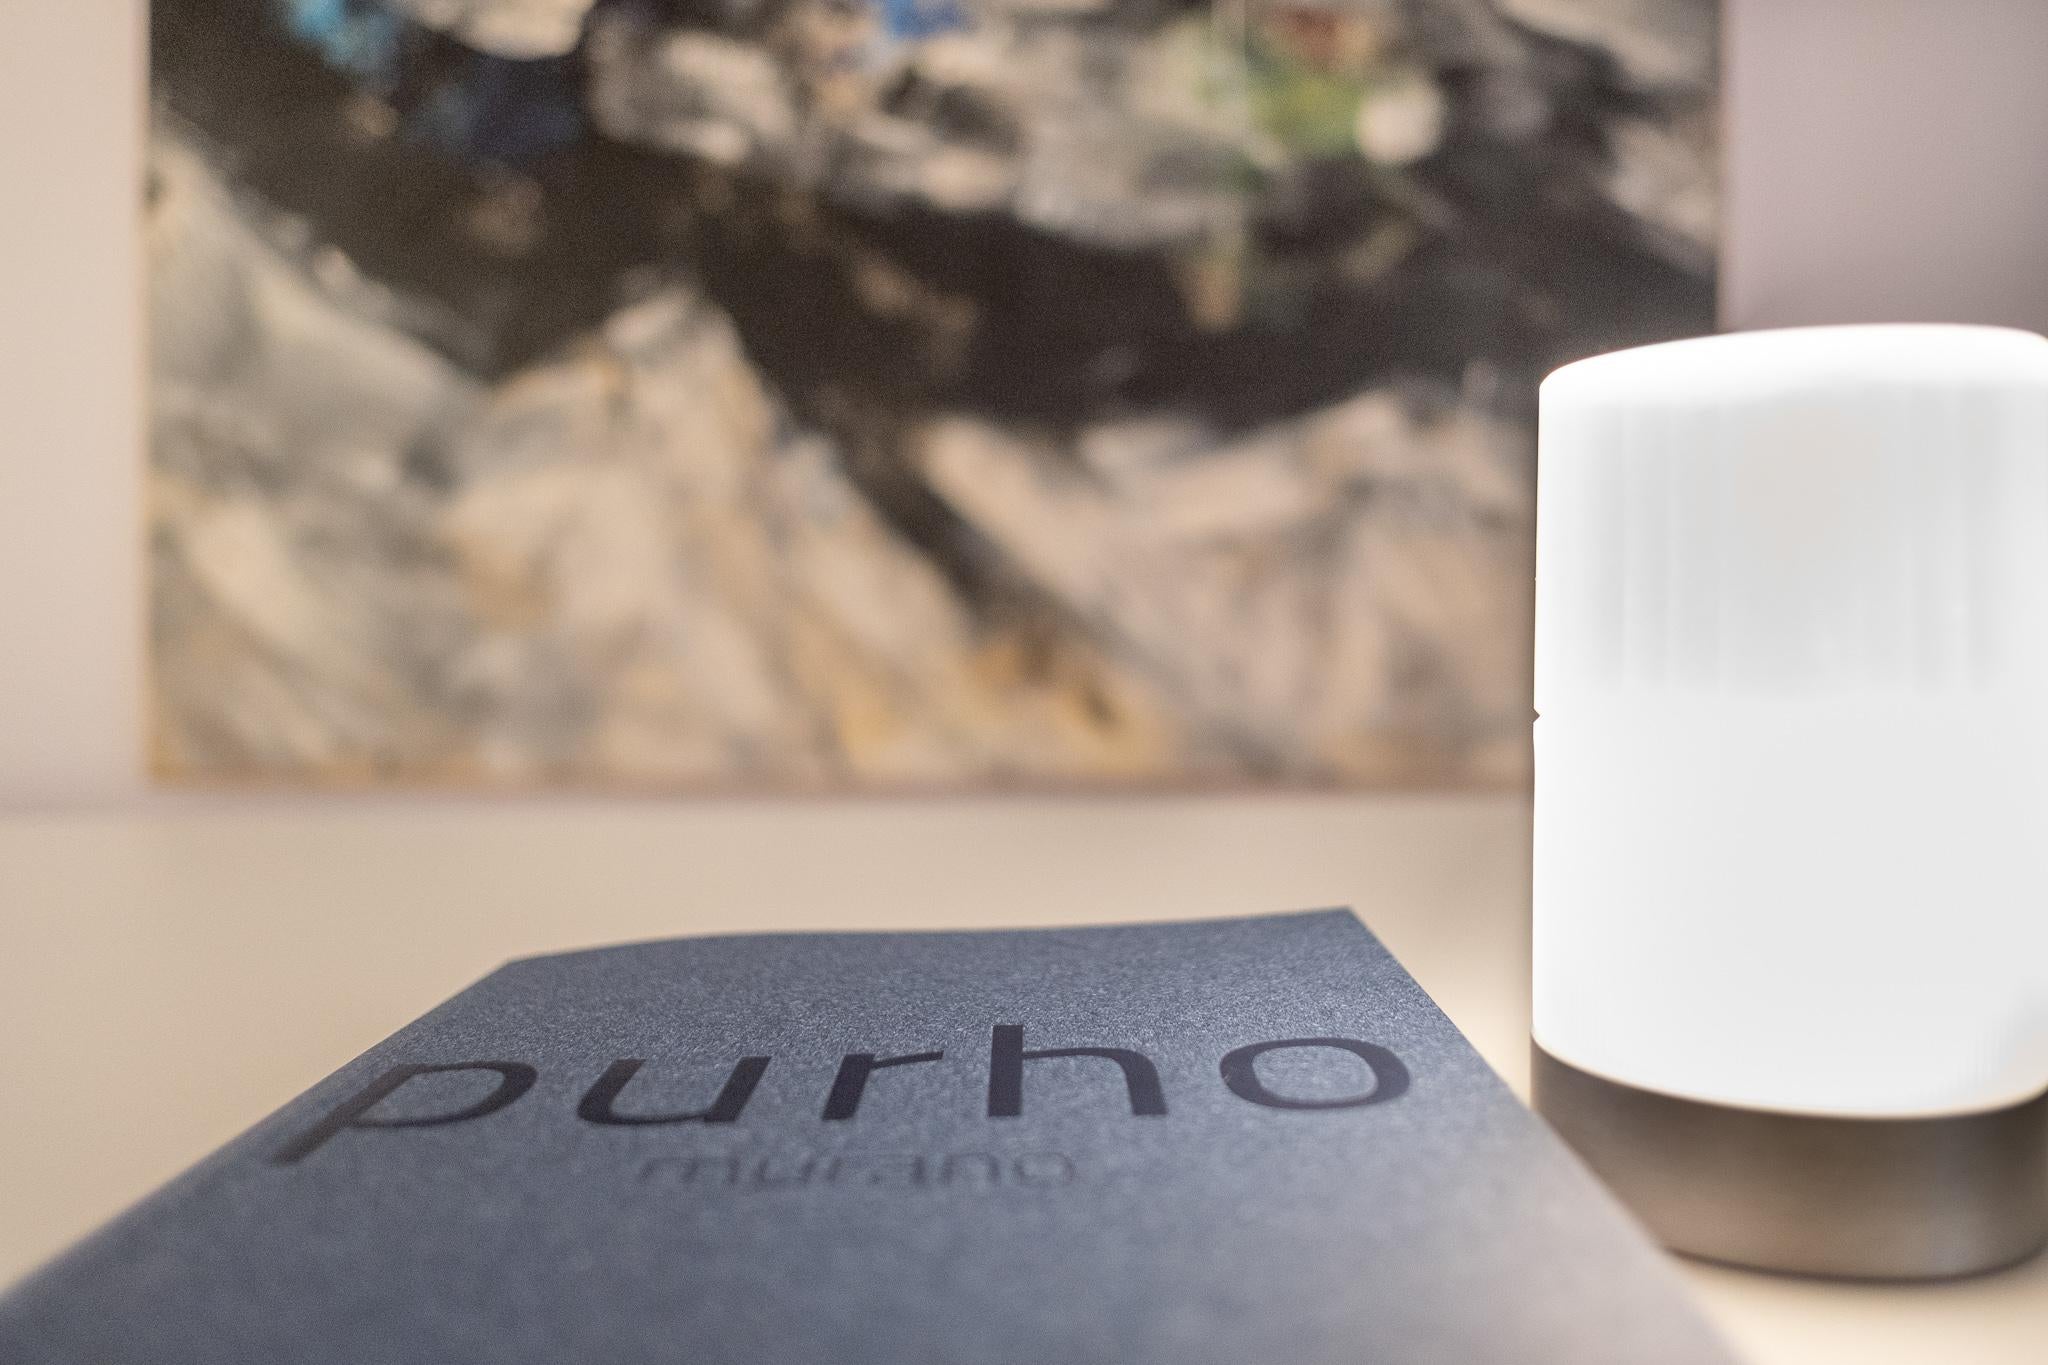 Conçue par Federico Peri pour Purho Murano, Haute Stripe est une lampe de table rechargeable aux dimensions sobres (diamètre 76 x hauteur 133 mm), entièrement réalisée en verre de Murano.
Faisant partie de la collection Incisioni composée de vases,